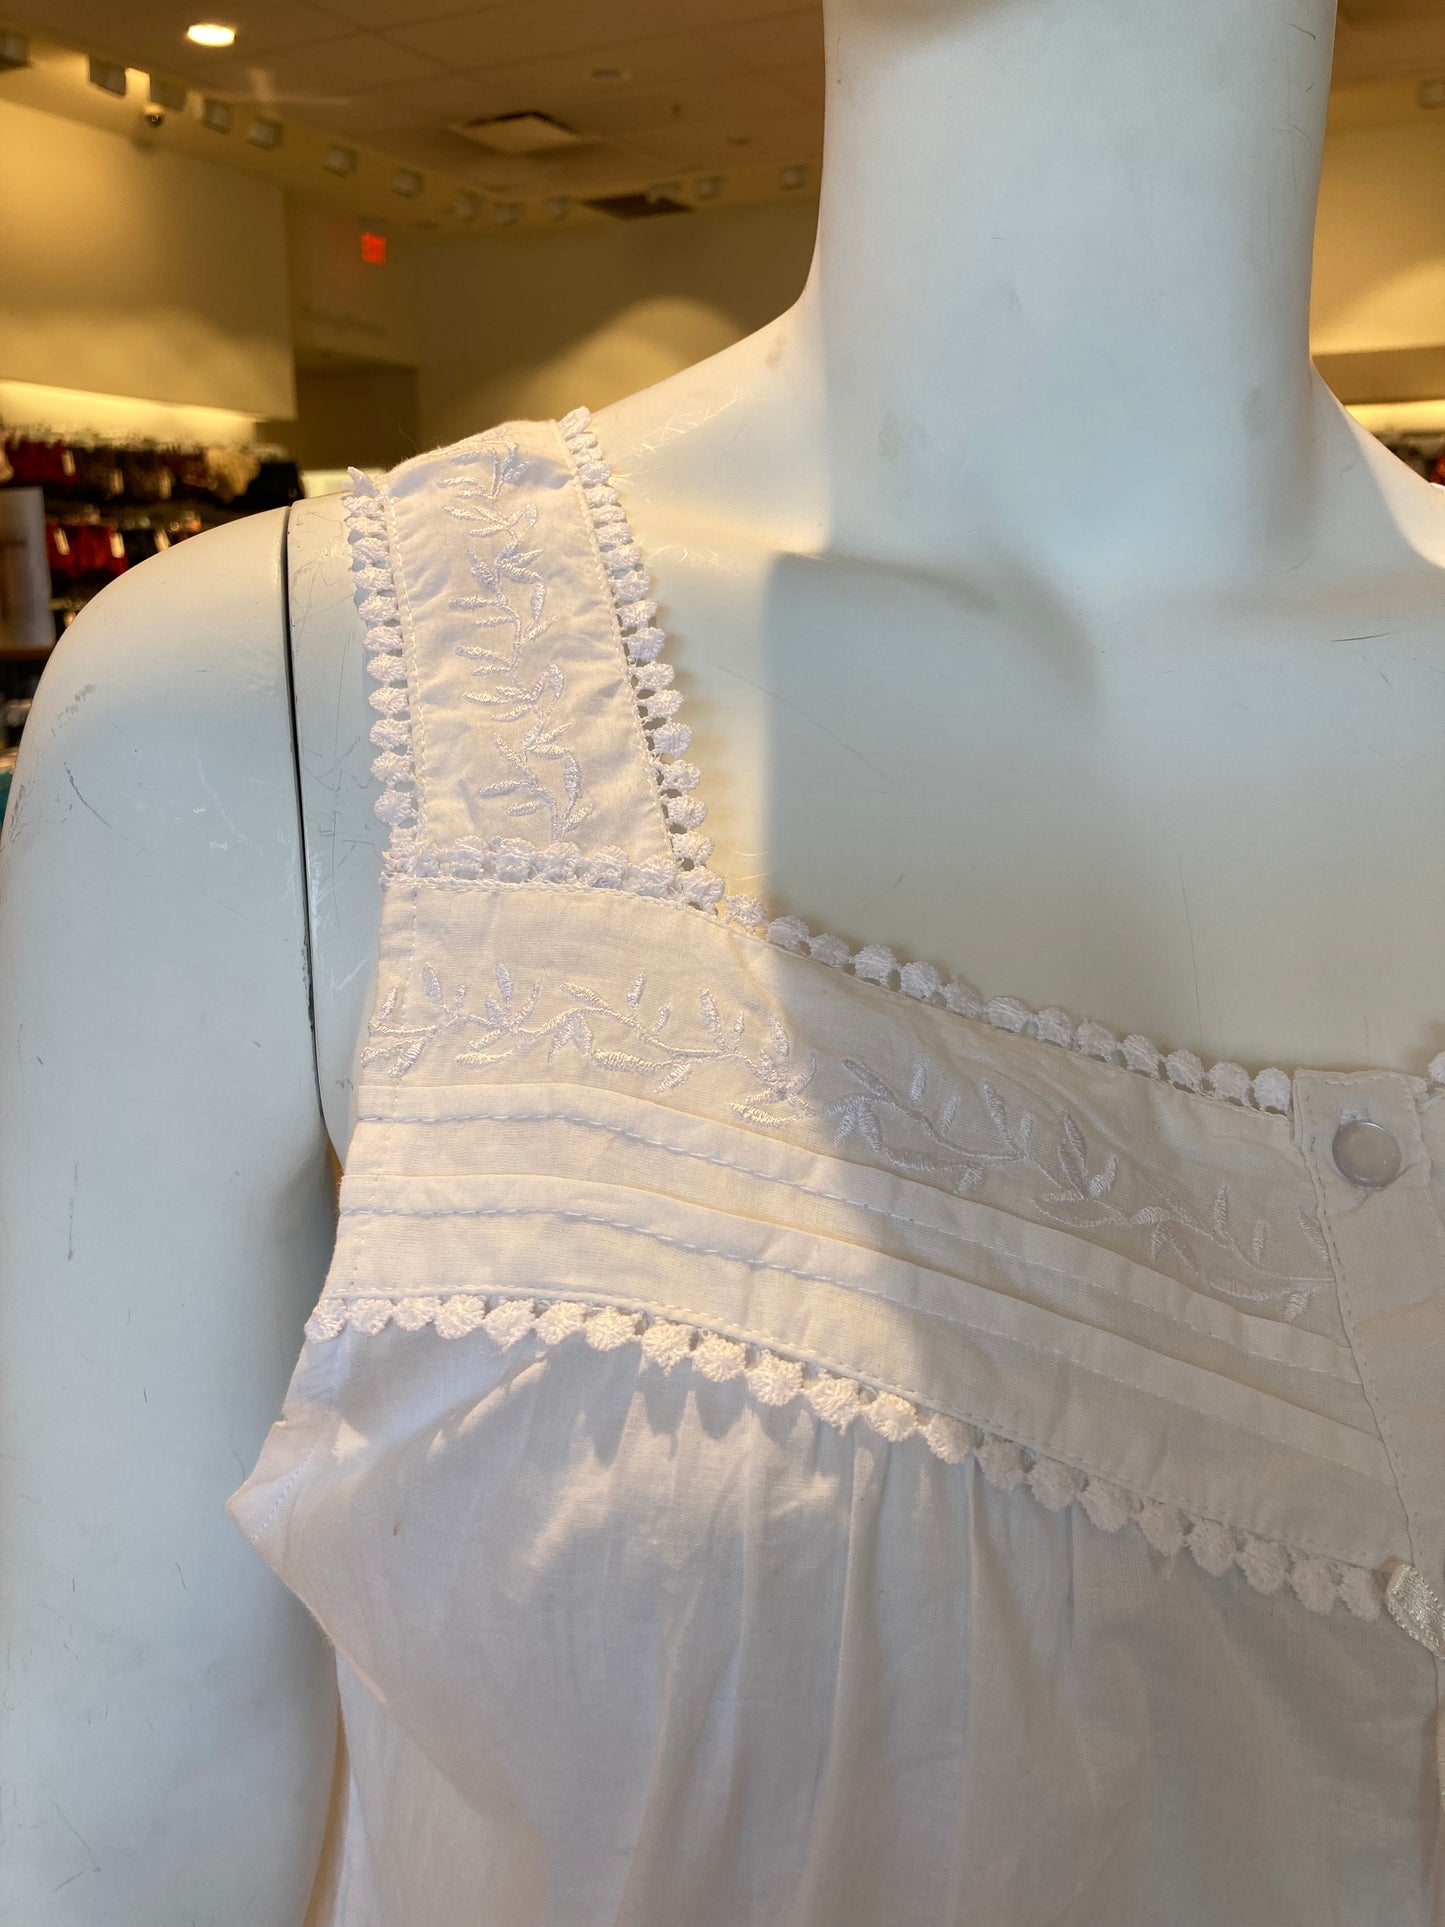 100% Cotton Sleeveless 36" Nightgown 4599 - White